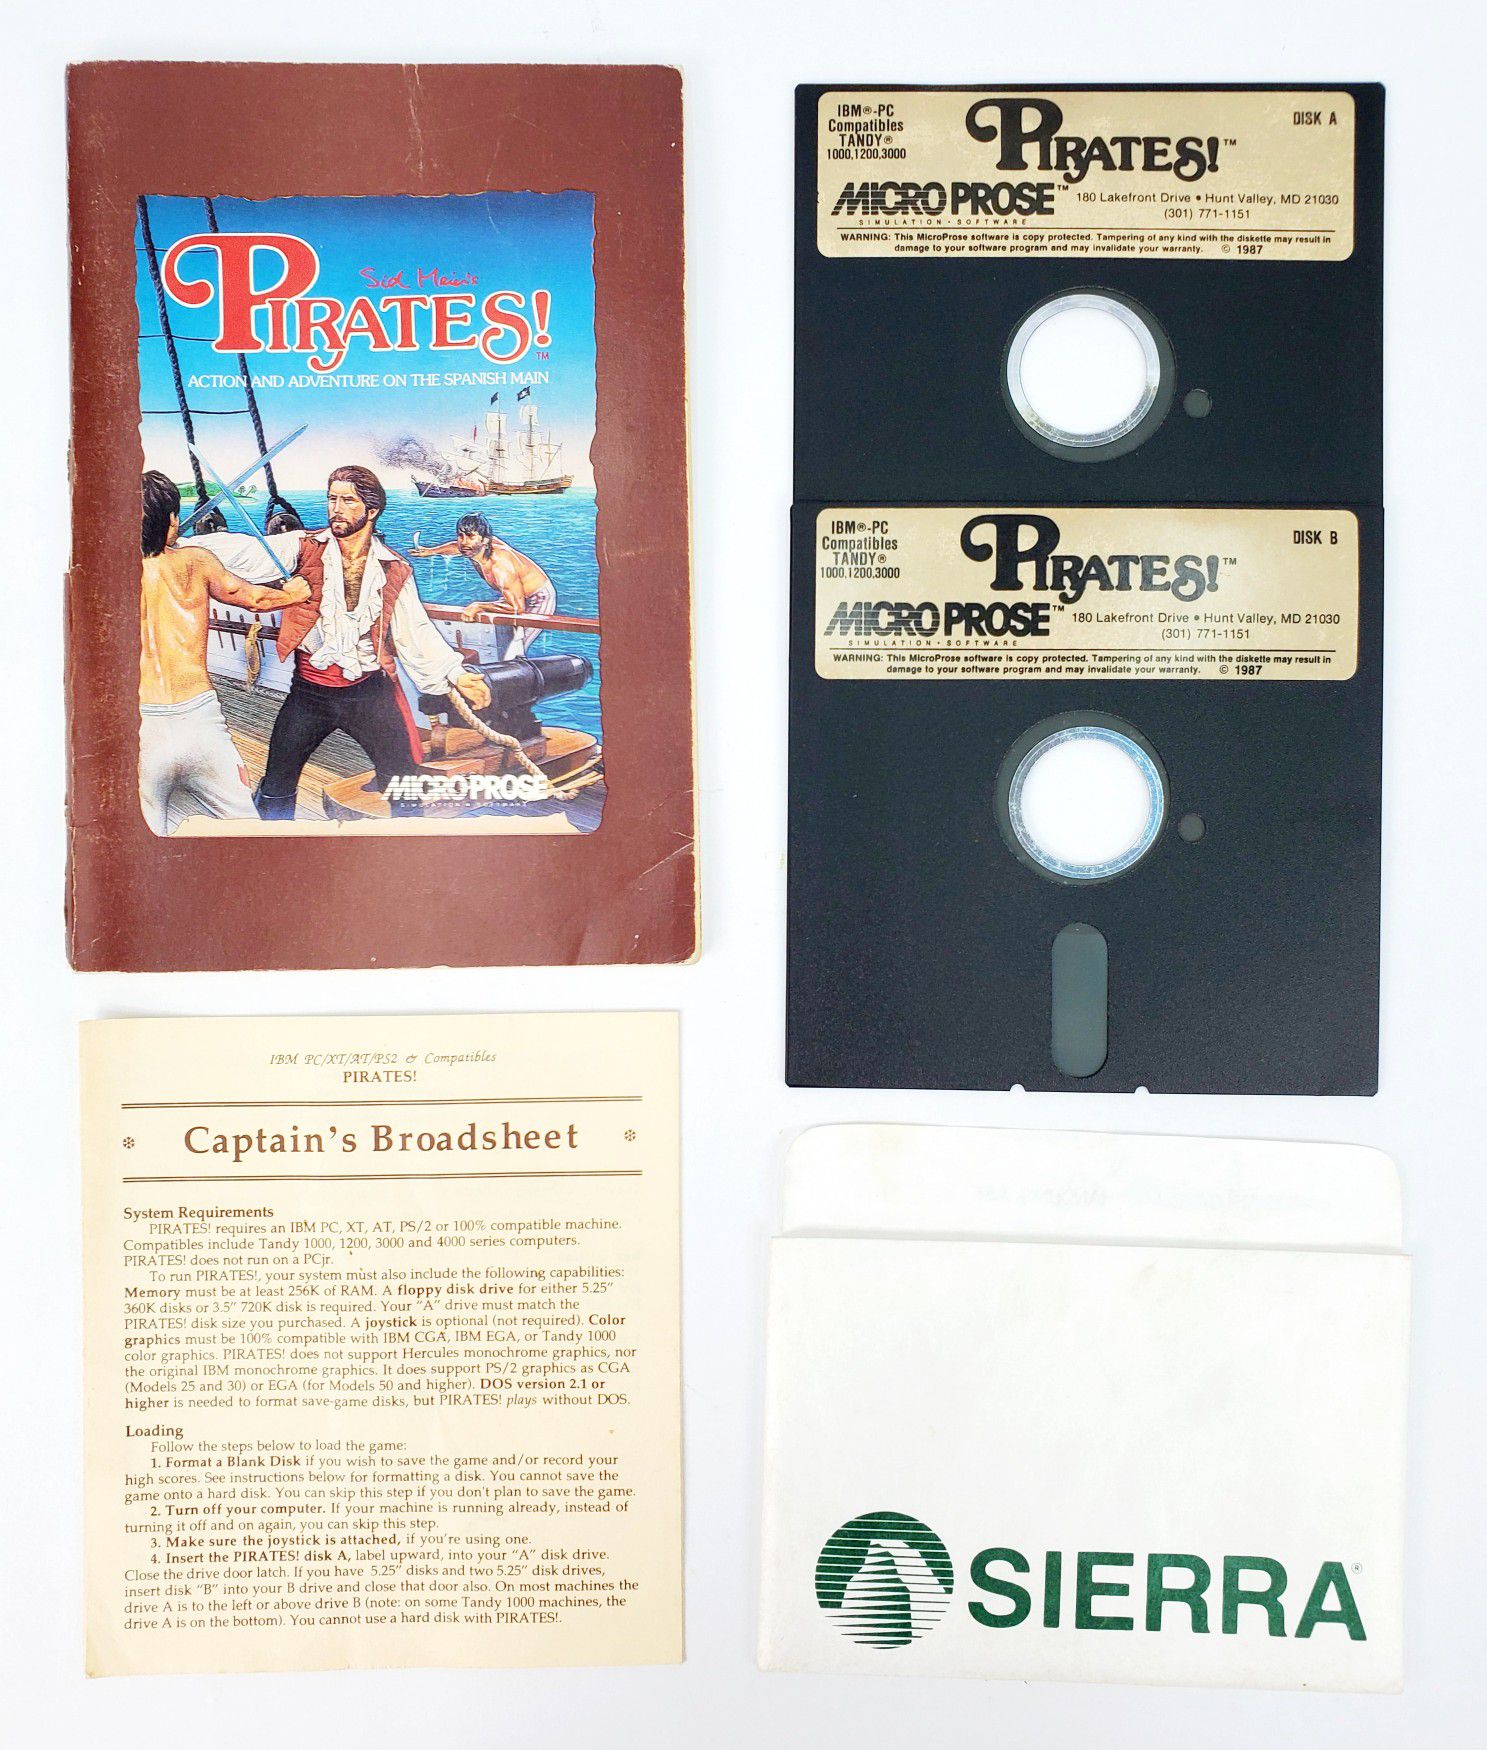 MicroProse - Pirates! - 5.25" Floppy Disks, Manual etc. (1987) - IBM PC Tandy